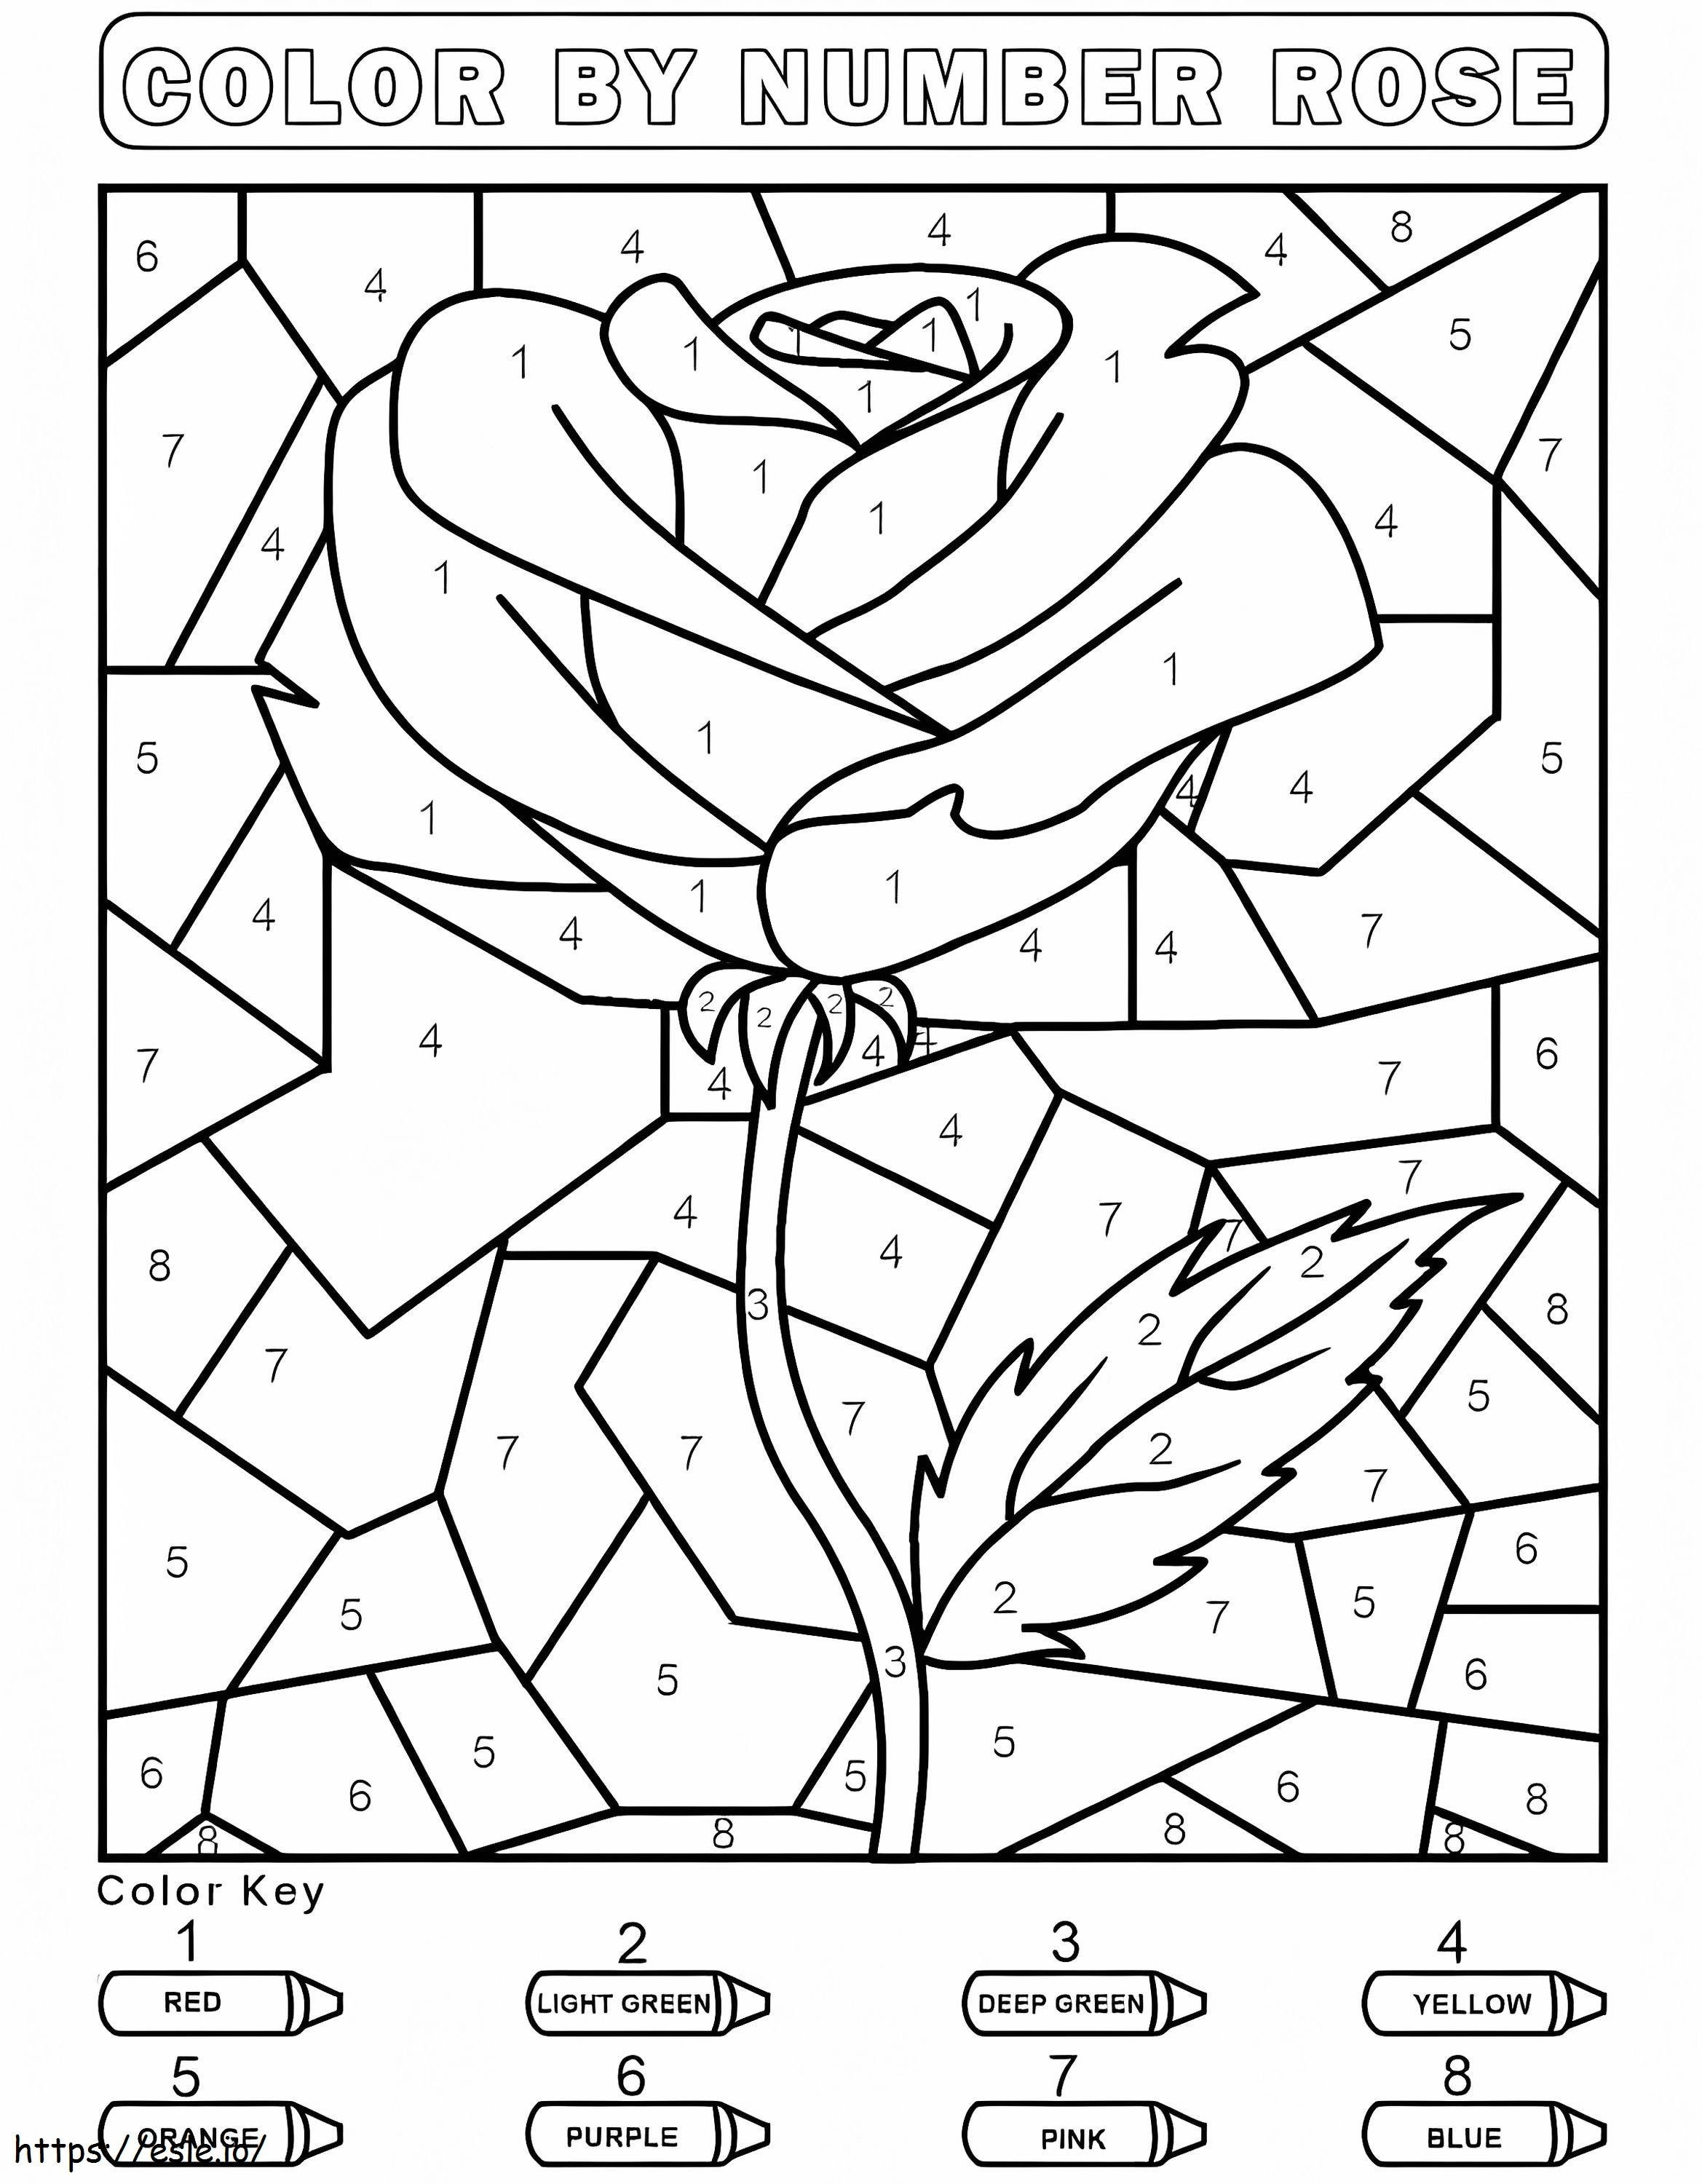 Łatwe kolorowanie róż według numerów kolorowanka